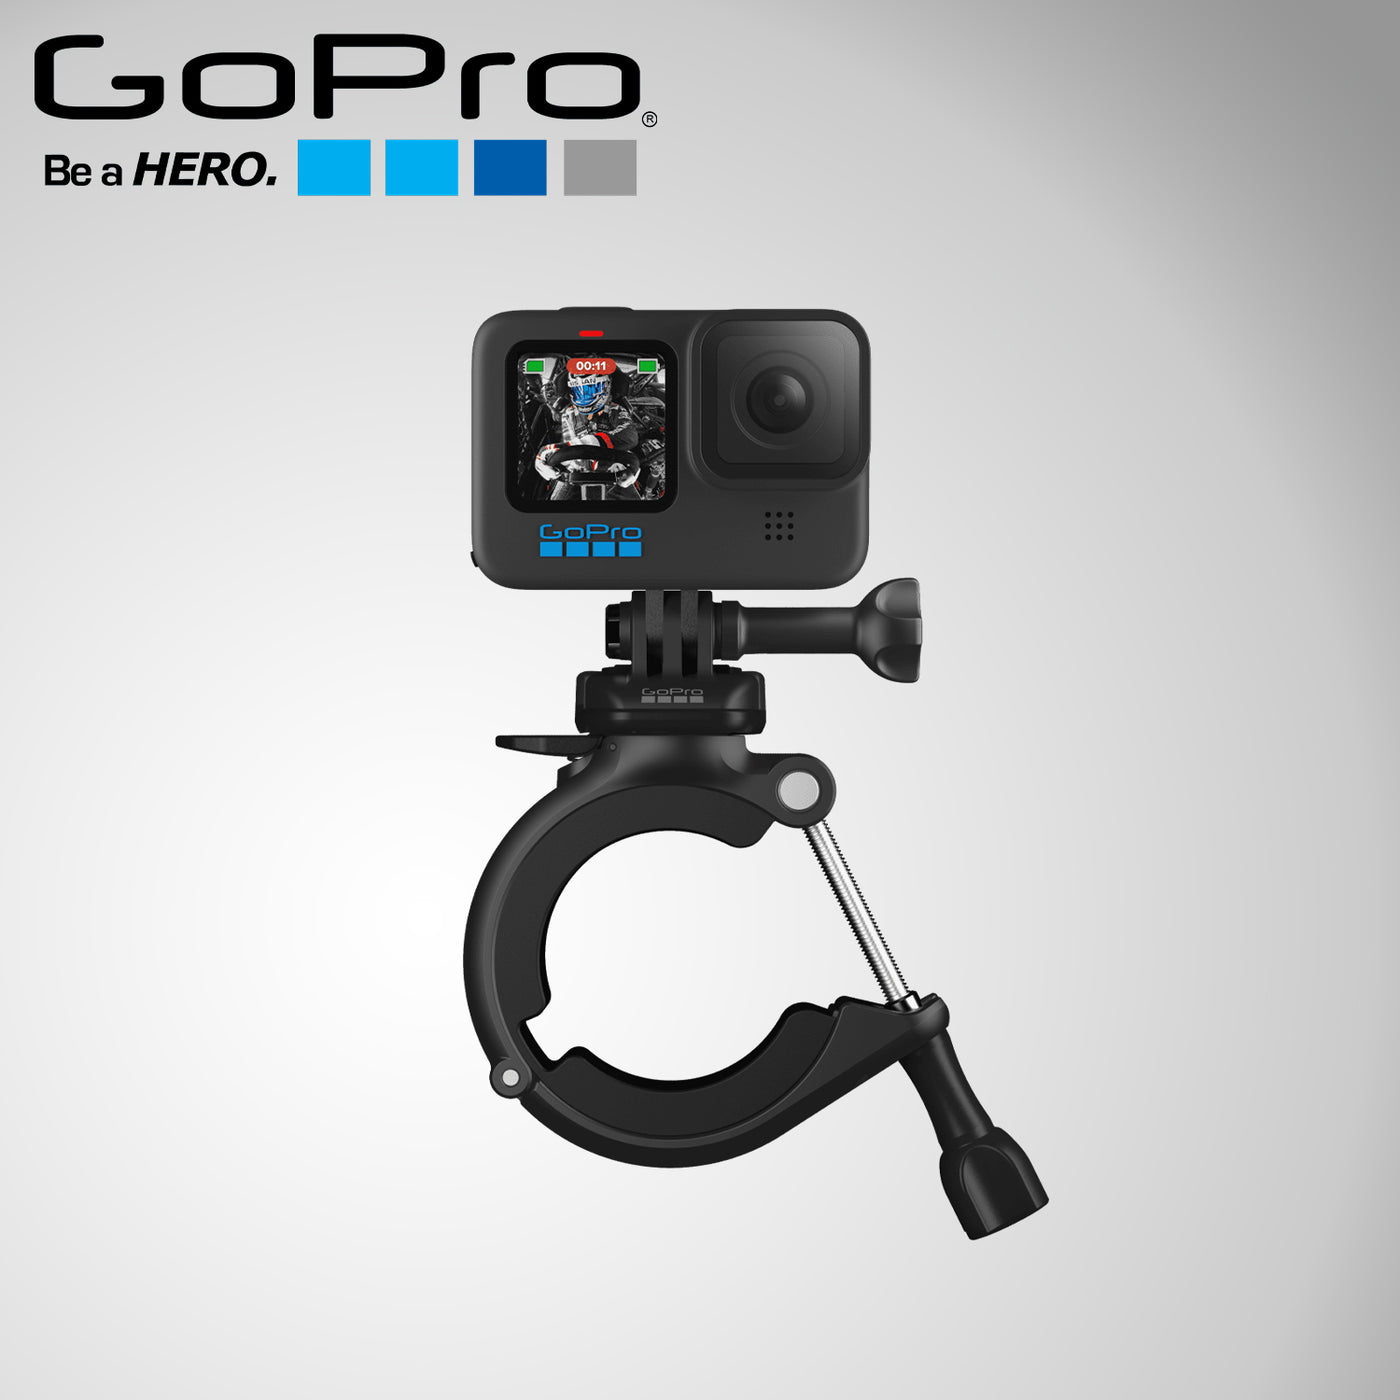 Soporte de tubo - Accesorio oficial de GoPro